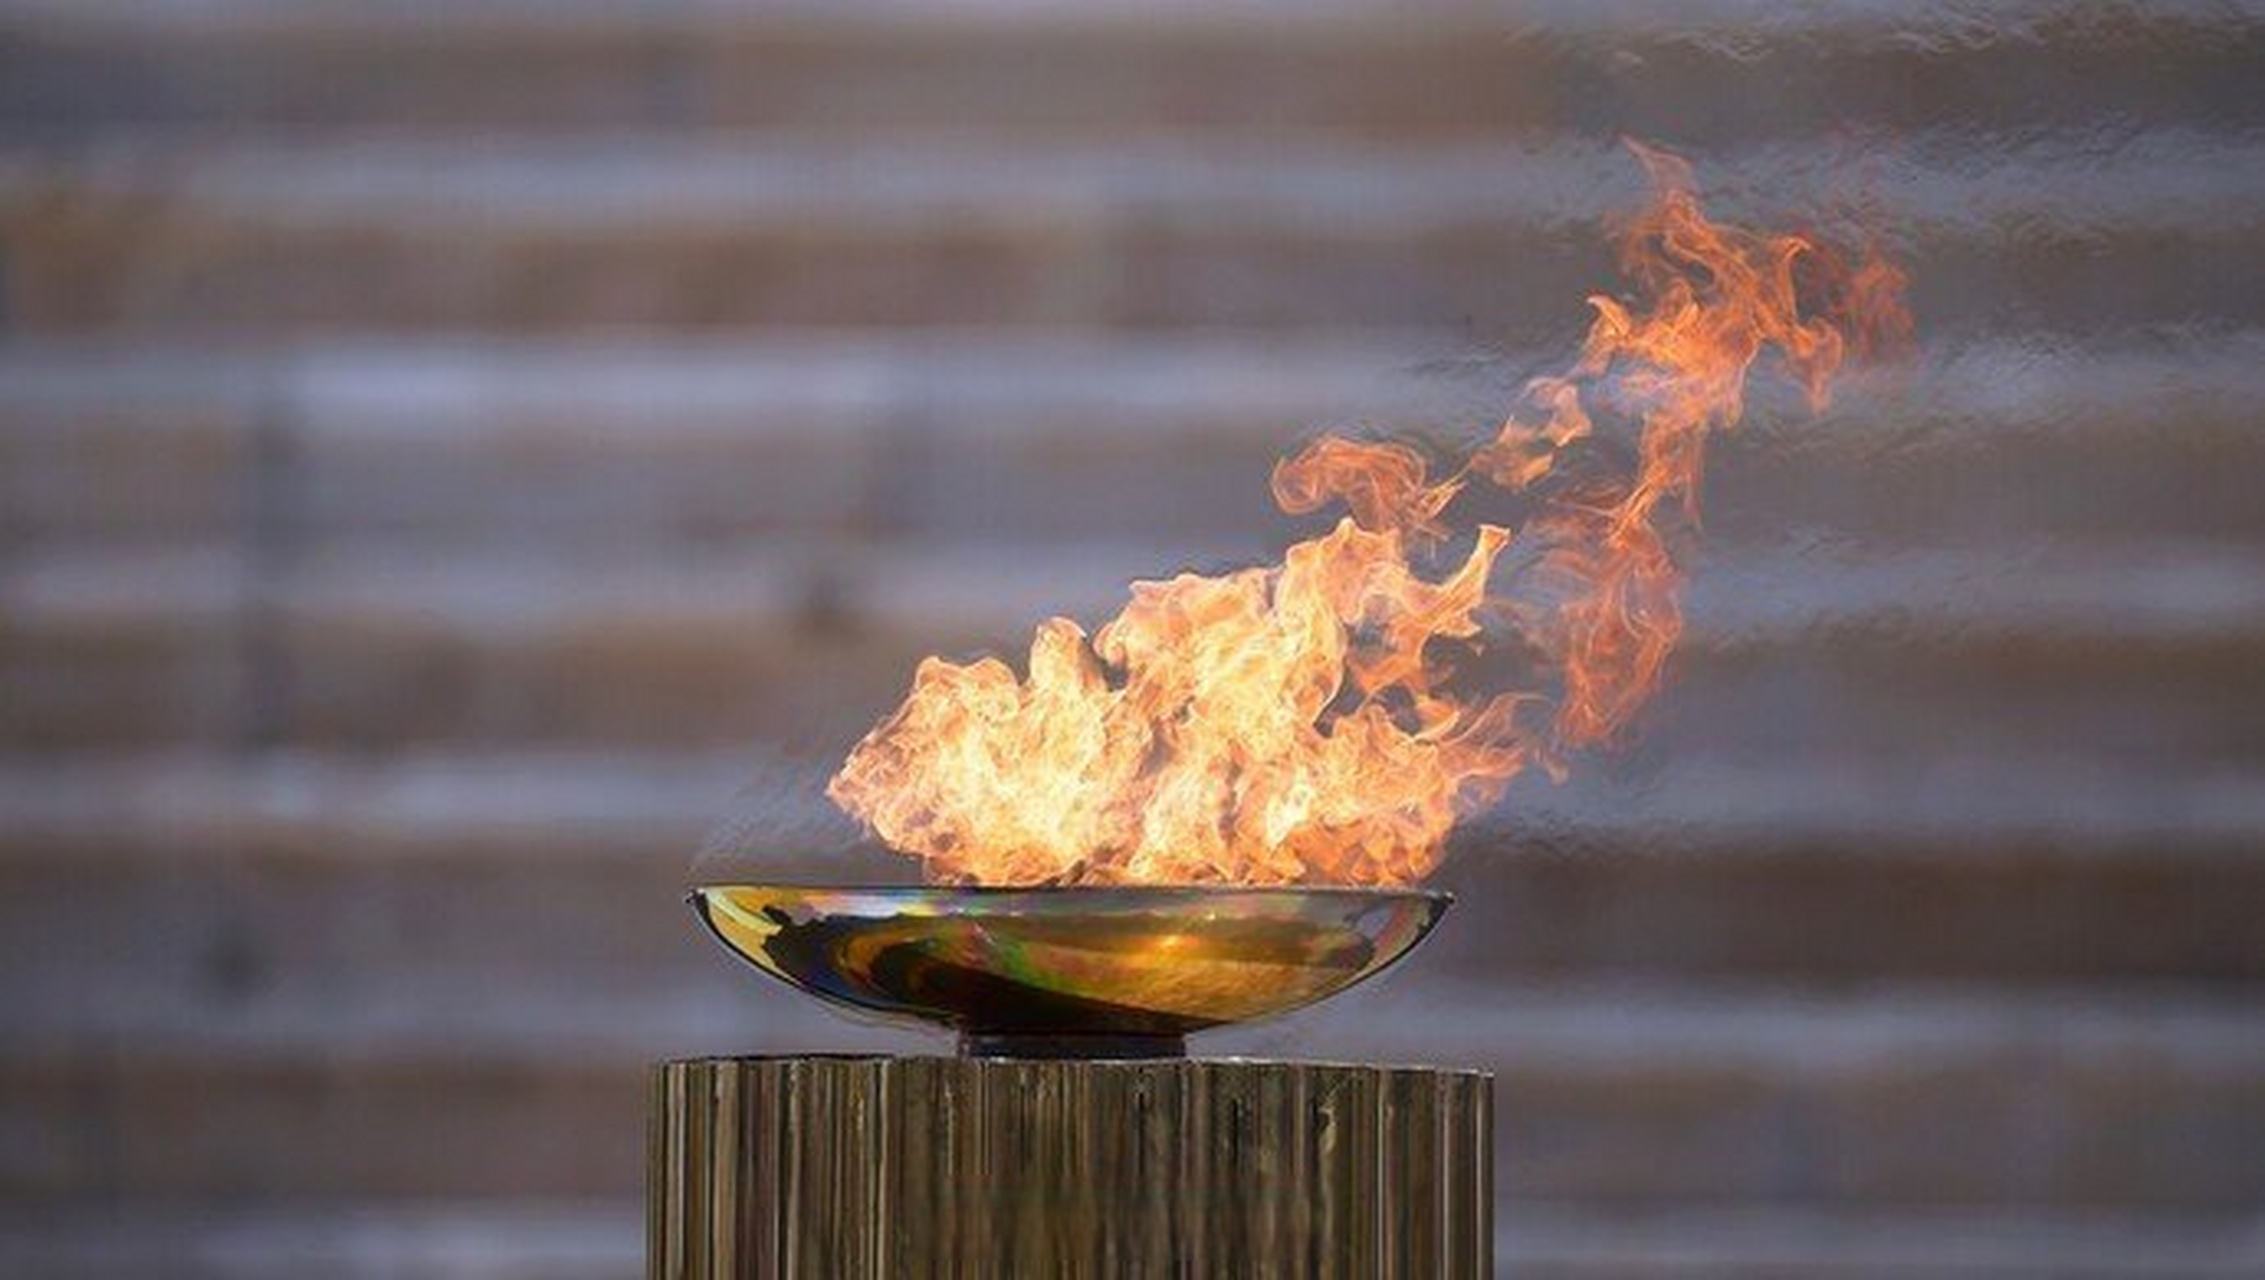 北京冬奥圣火将于18日点燃   2022北京冬奥会的圣火点燃仪式即将于10